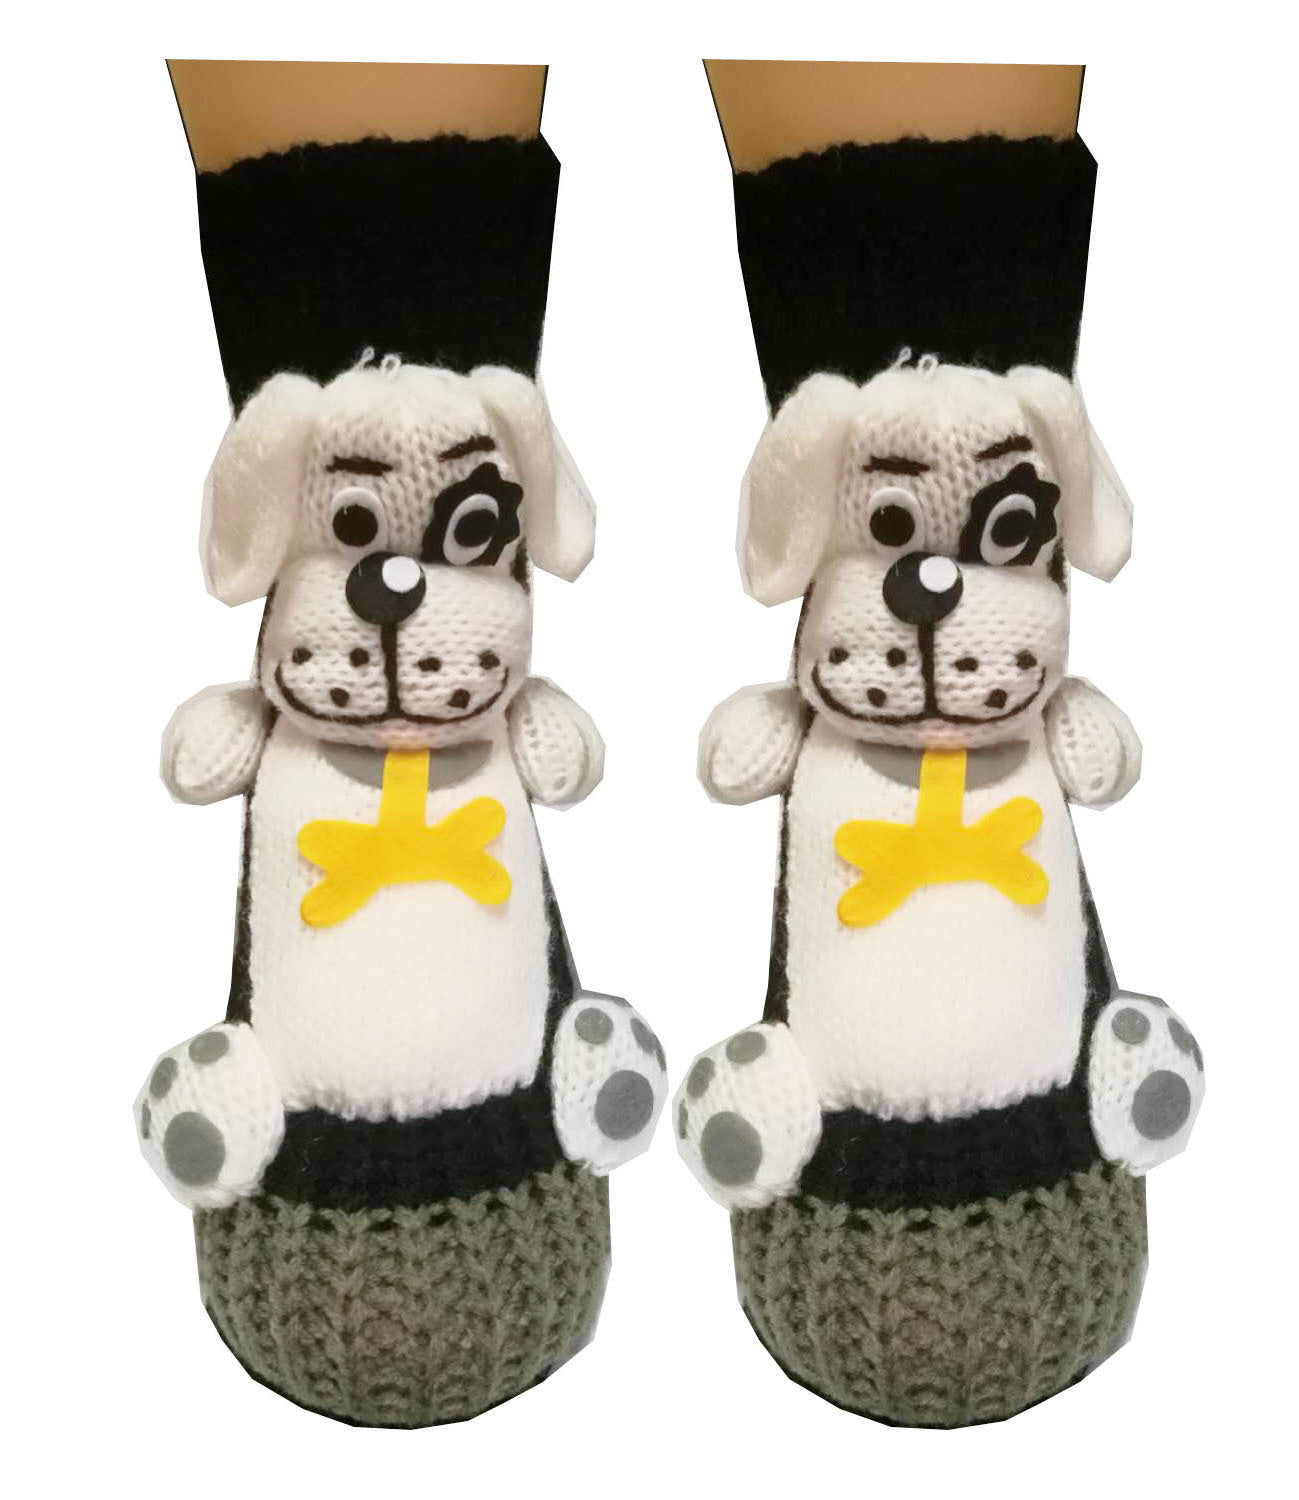 3D Cartoon Anti-Skid Wool Socks Knit Socks Thickened Winter Warm Christmas Socks